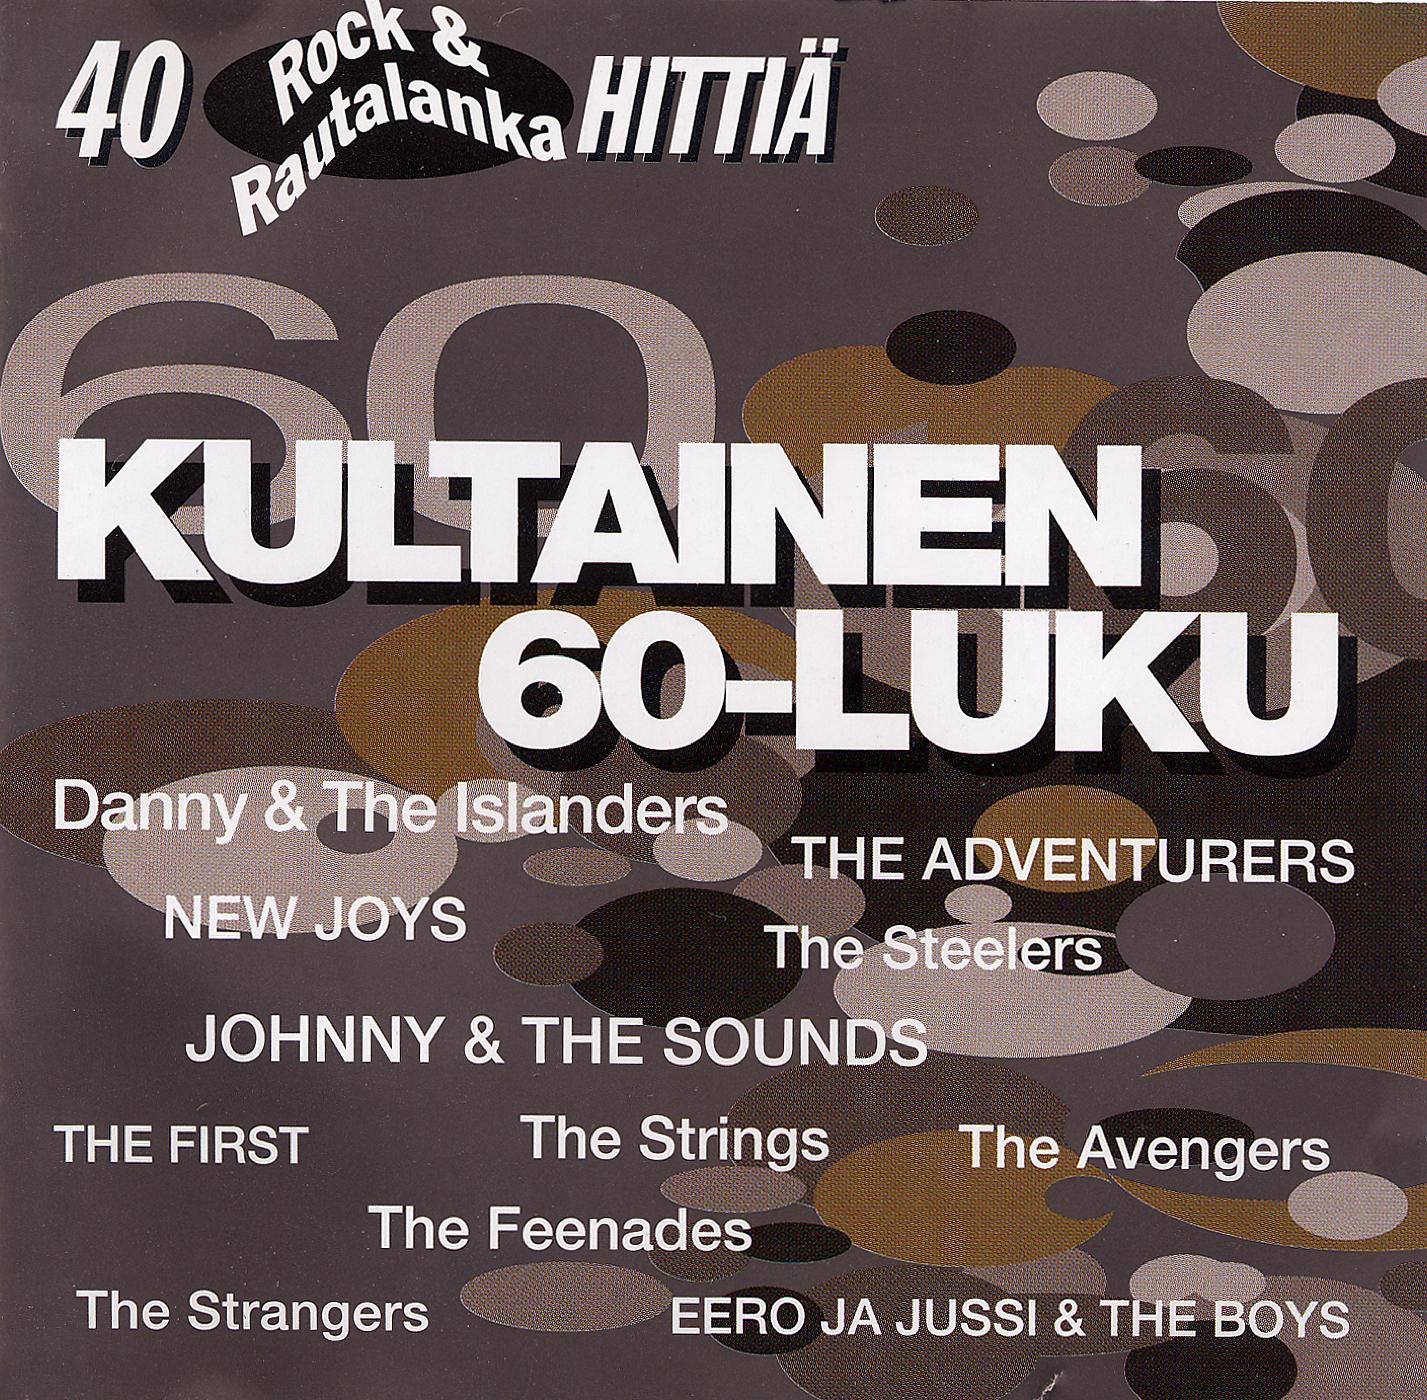 Постер альбома Kultainen 60-luku - 40 Rock & Rautalanka hittiä